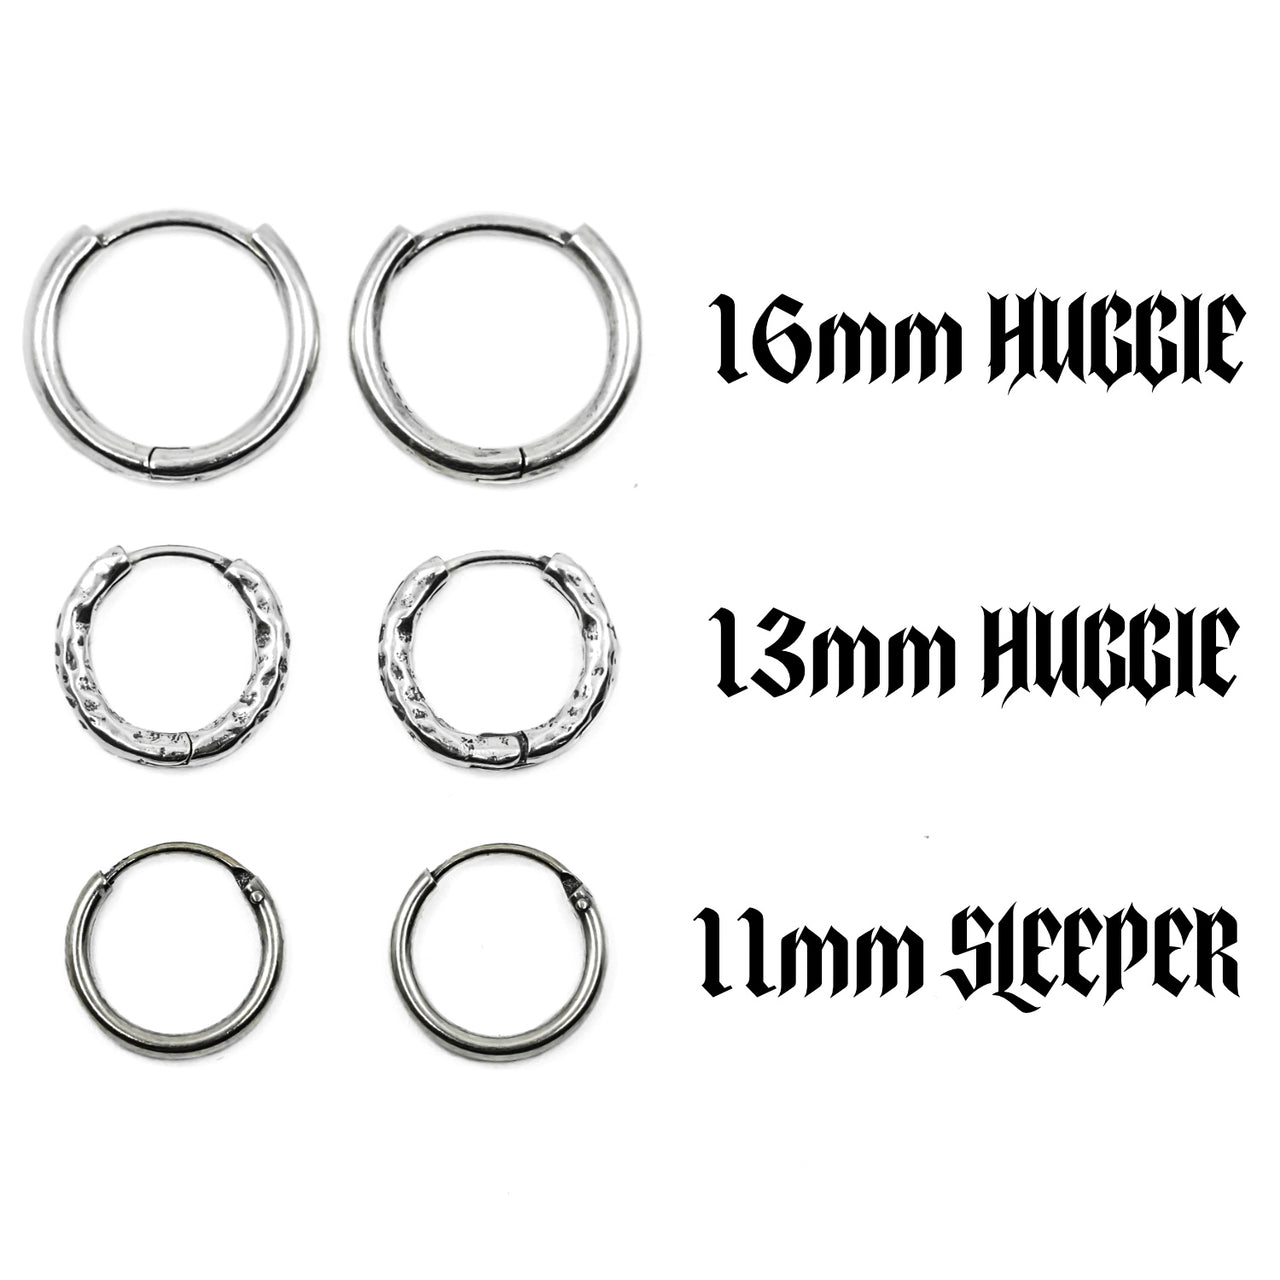 Different sterling silver earring hoop options - sterling silver huggie and sleeper hoop